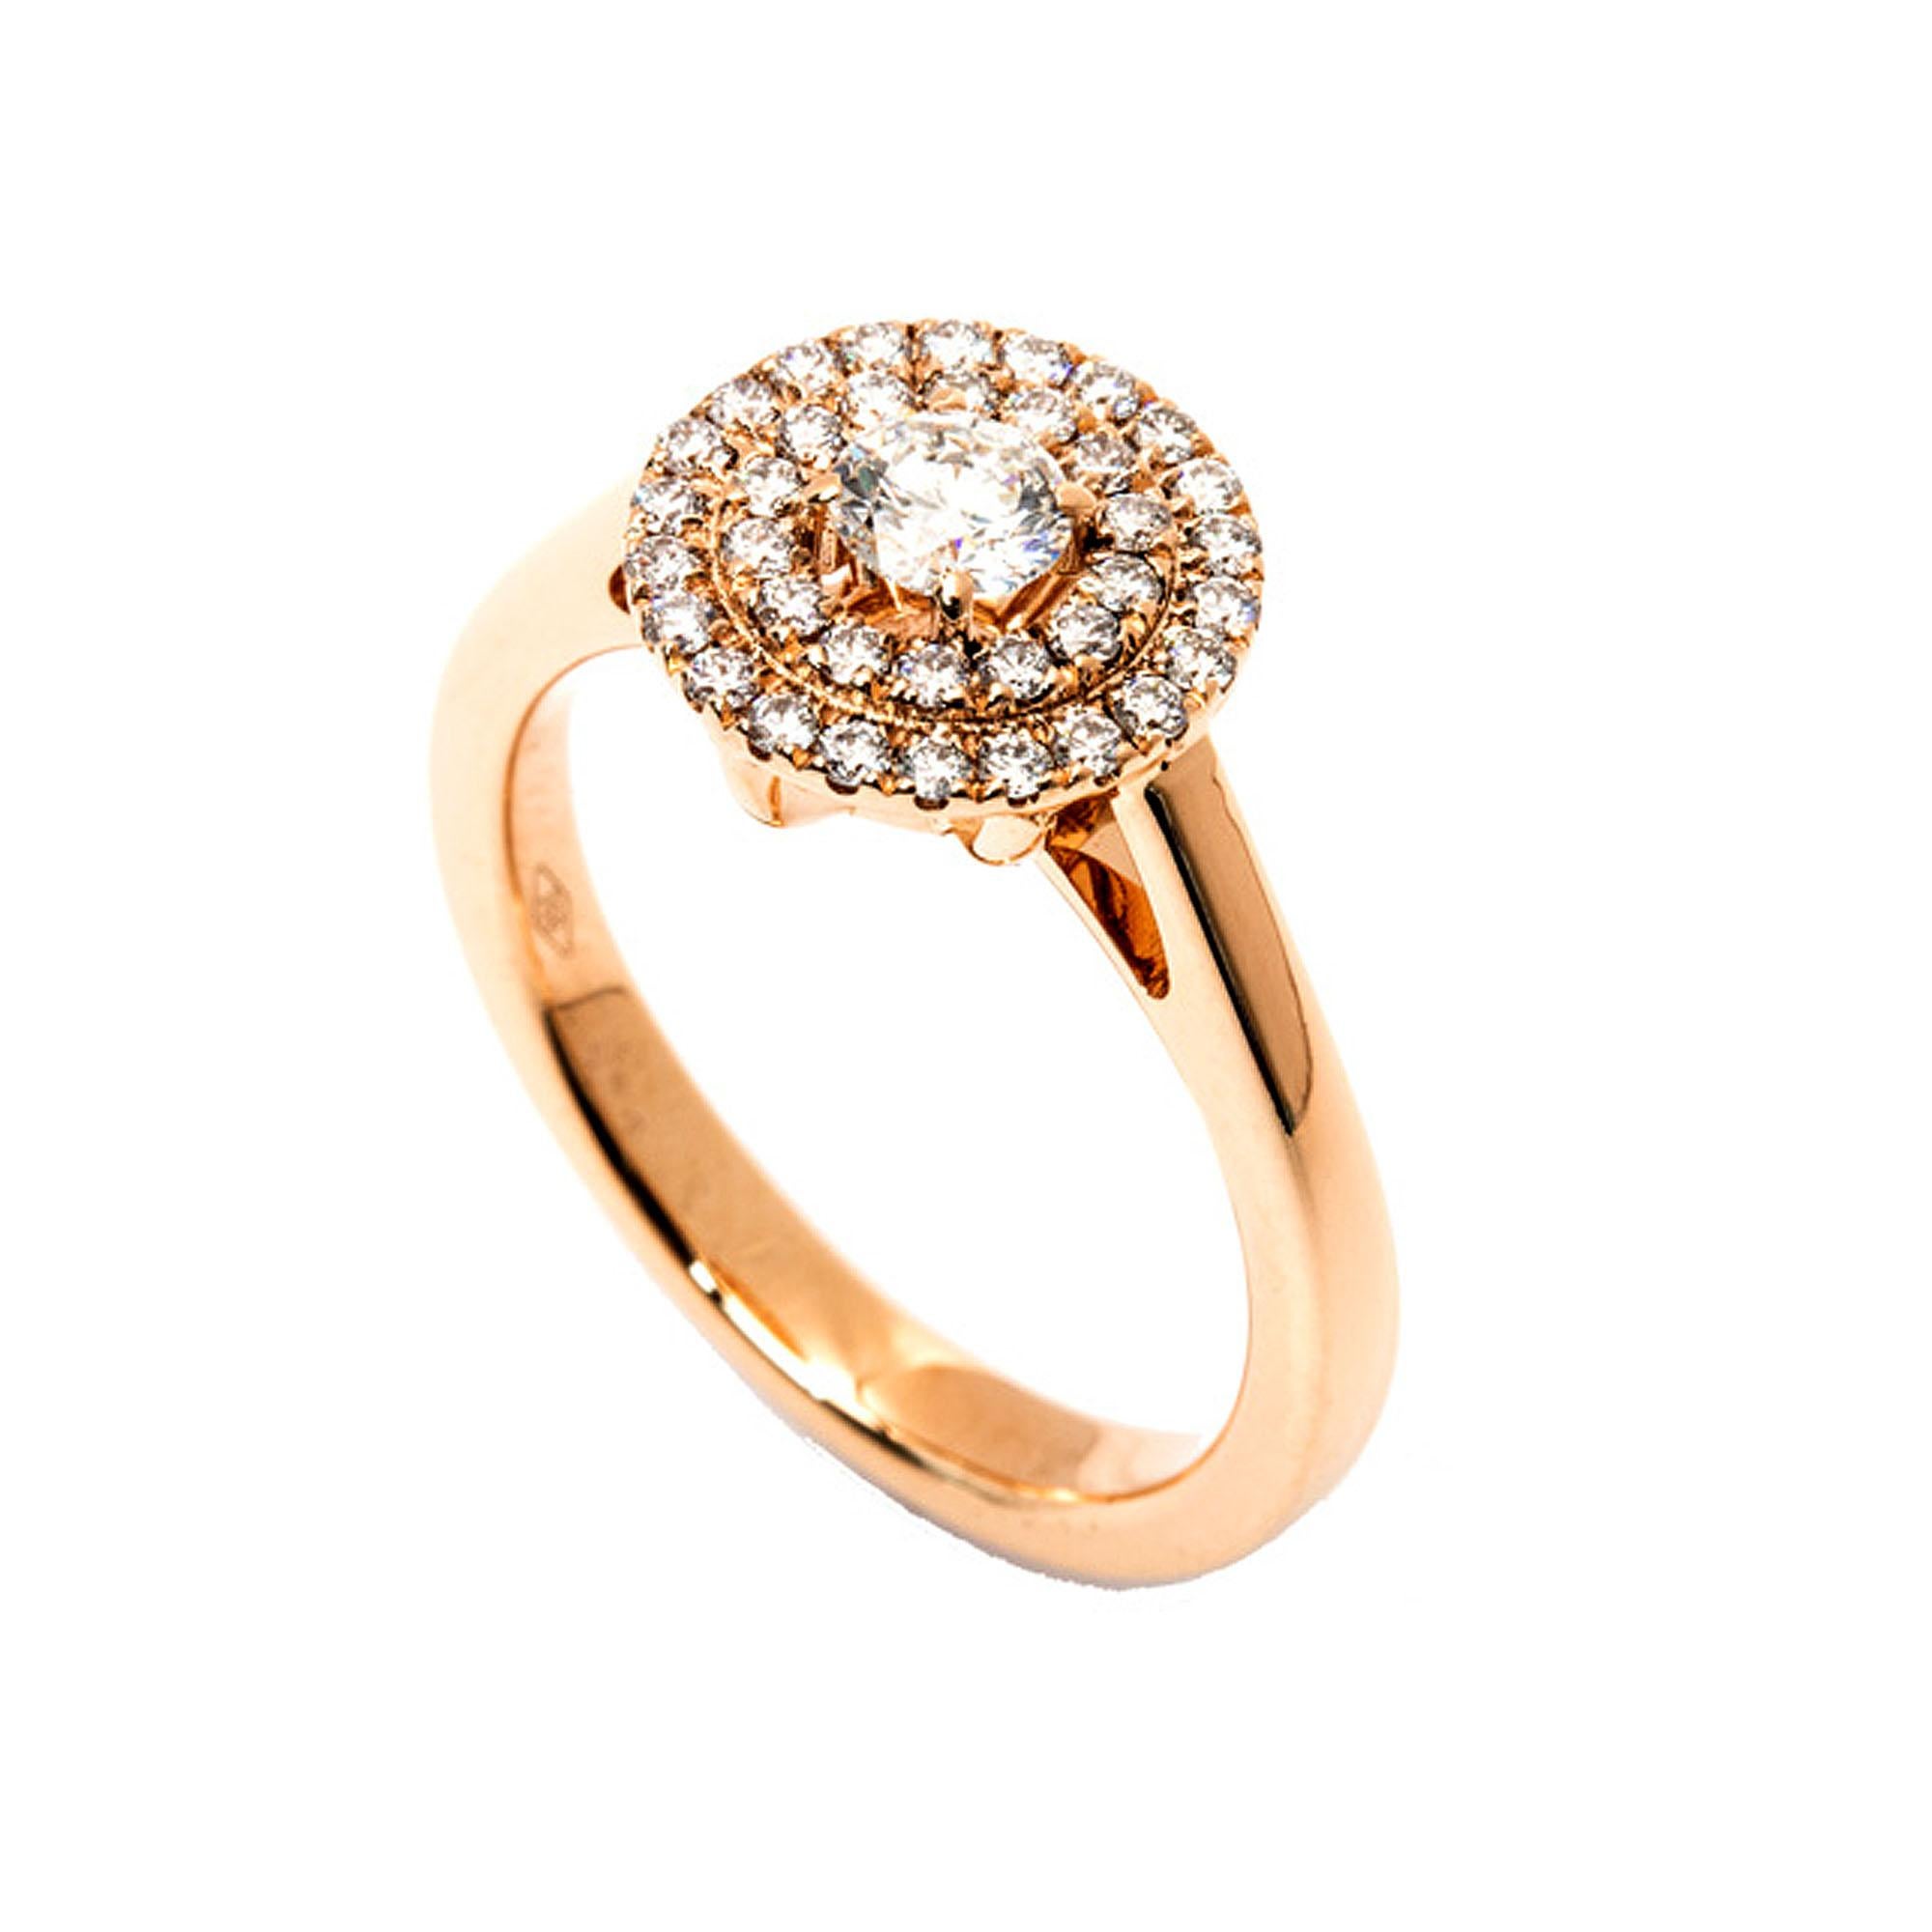 Ein atemberaubendes Schmuckstück, der GIA-zertifizierte Doppelhalo-Ring aus Gold mit rundem Diamant, ist ein wahres Zeugnis für Raffinesse und zeitlose Eleganz. In der Mitte dieses exquisiten Rings befindet sich ein 0,50-Karat-Diamant, der vom